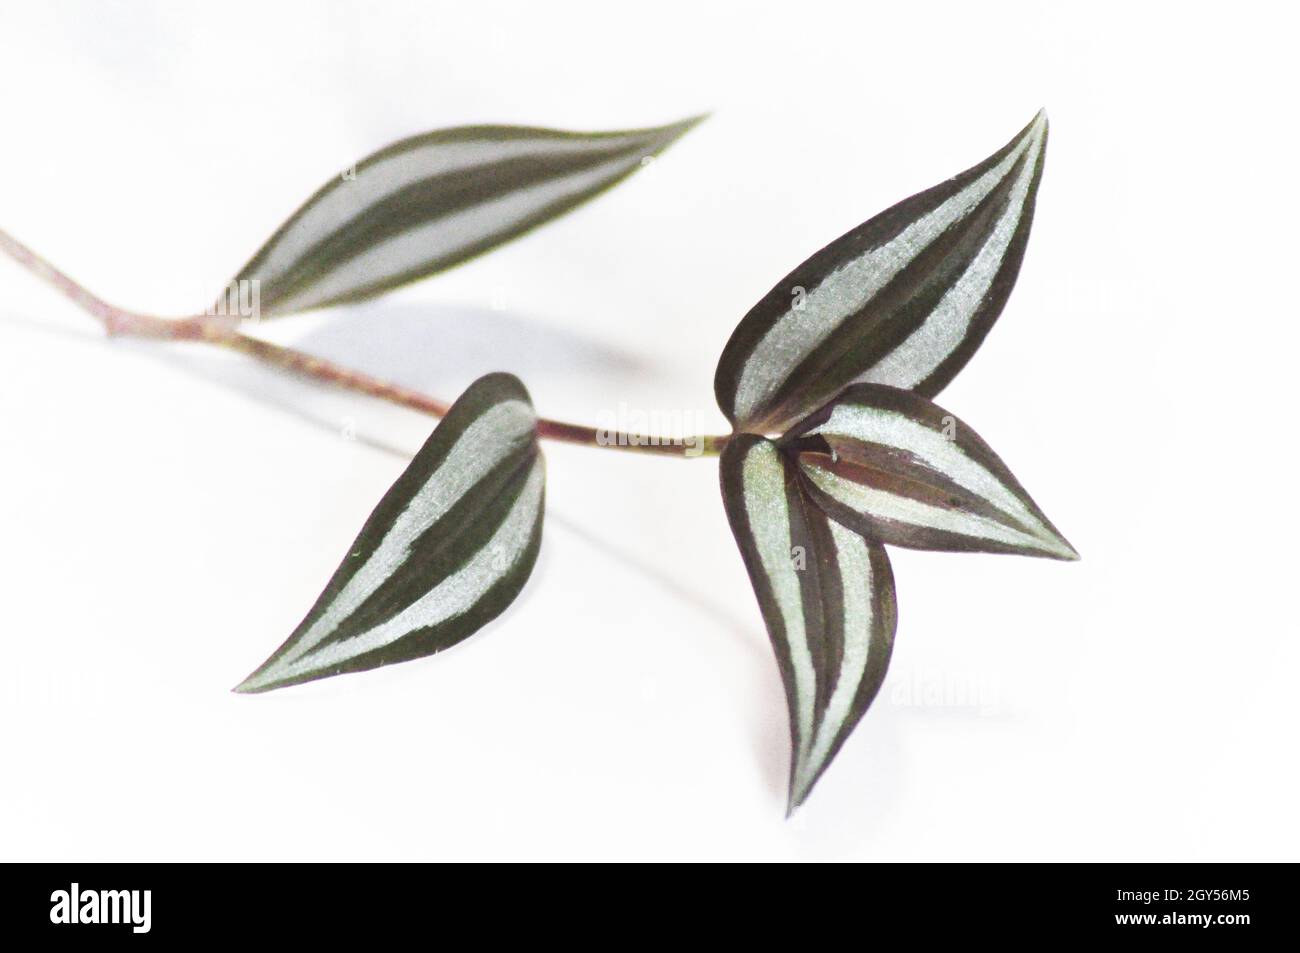 Tradescantia zebrina plante - une tige de la plante montrant 5 feuilles et placé sur un fond blanc Banque D'Images